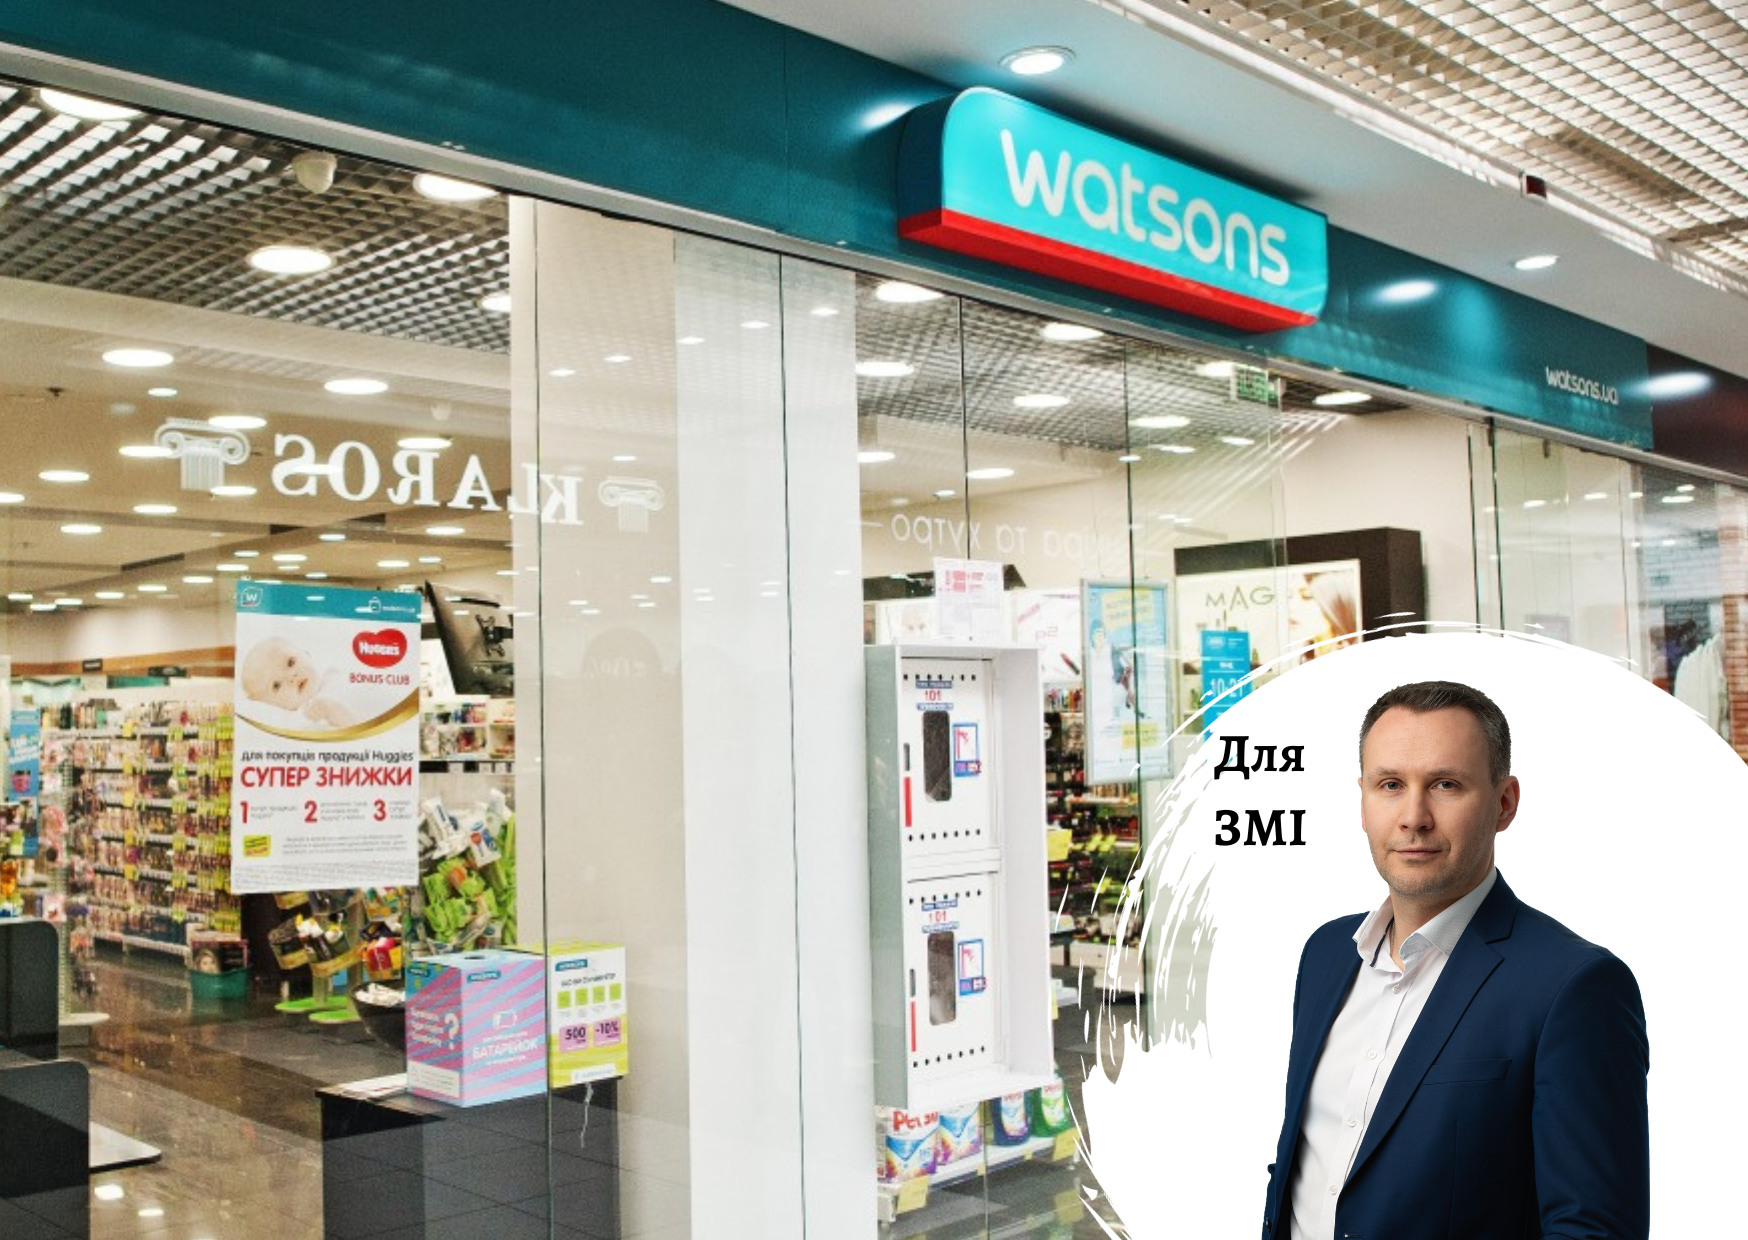 Украинская «дочка» Watsons была бесспорным лидером рынка, но теперь в разы меньше локальных EVA и Prostor – комментарии по рынку от гендиректора Pro-Consulting Александра Соколова. FORBES